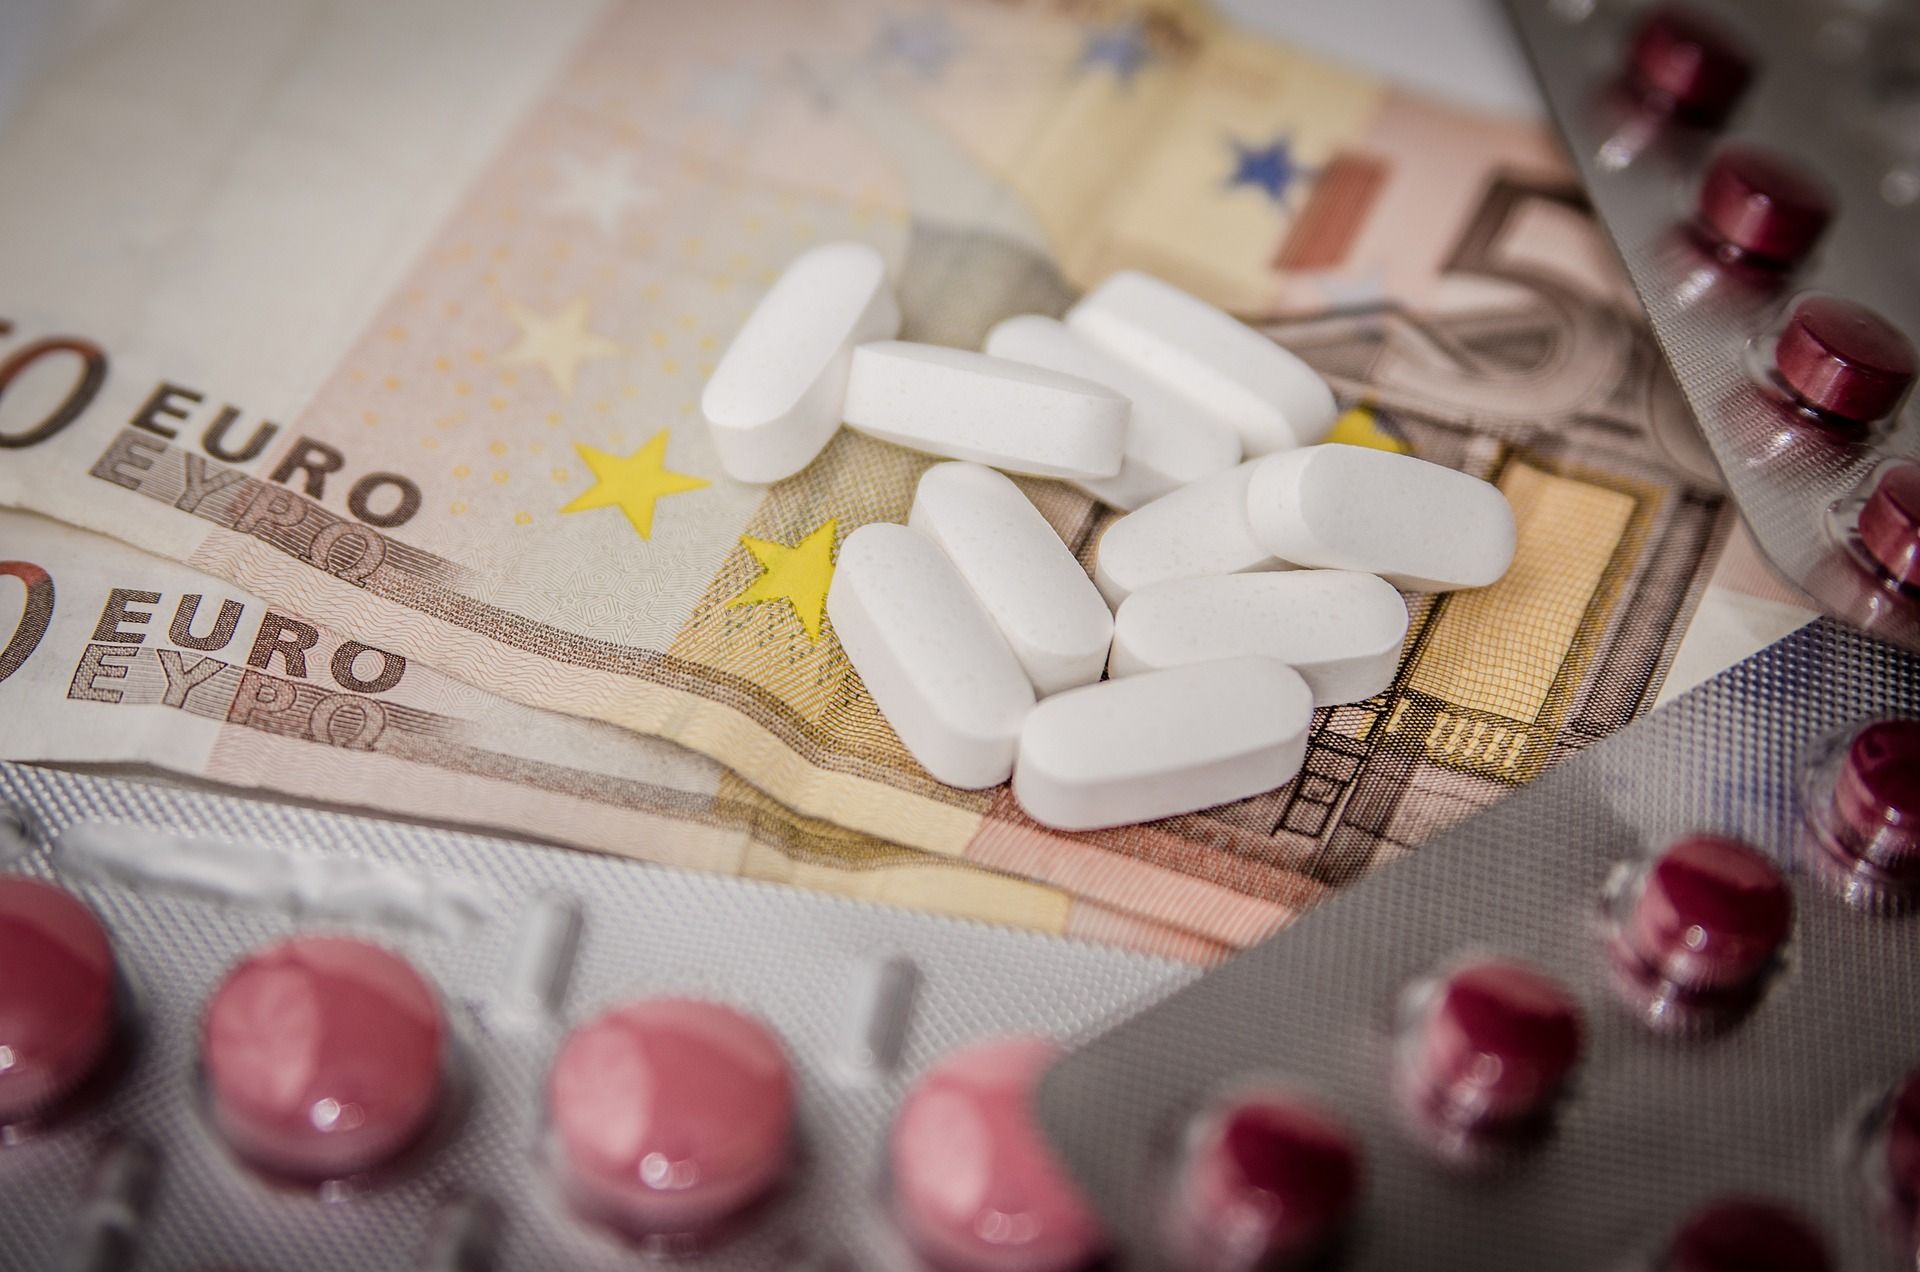 Les dépenses en médicaments augmentent chaque année, principalement en raison des traitements coûteux contre le cancer